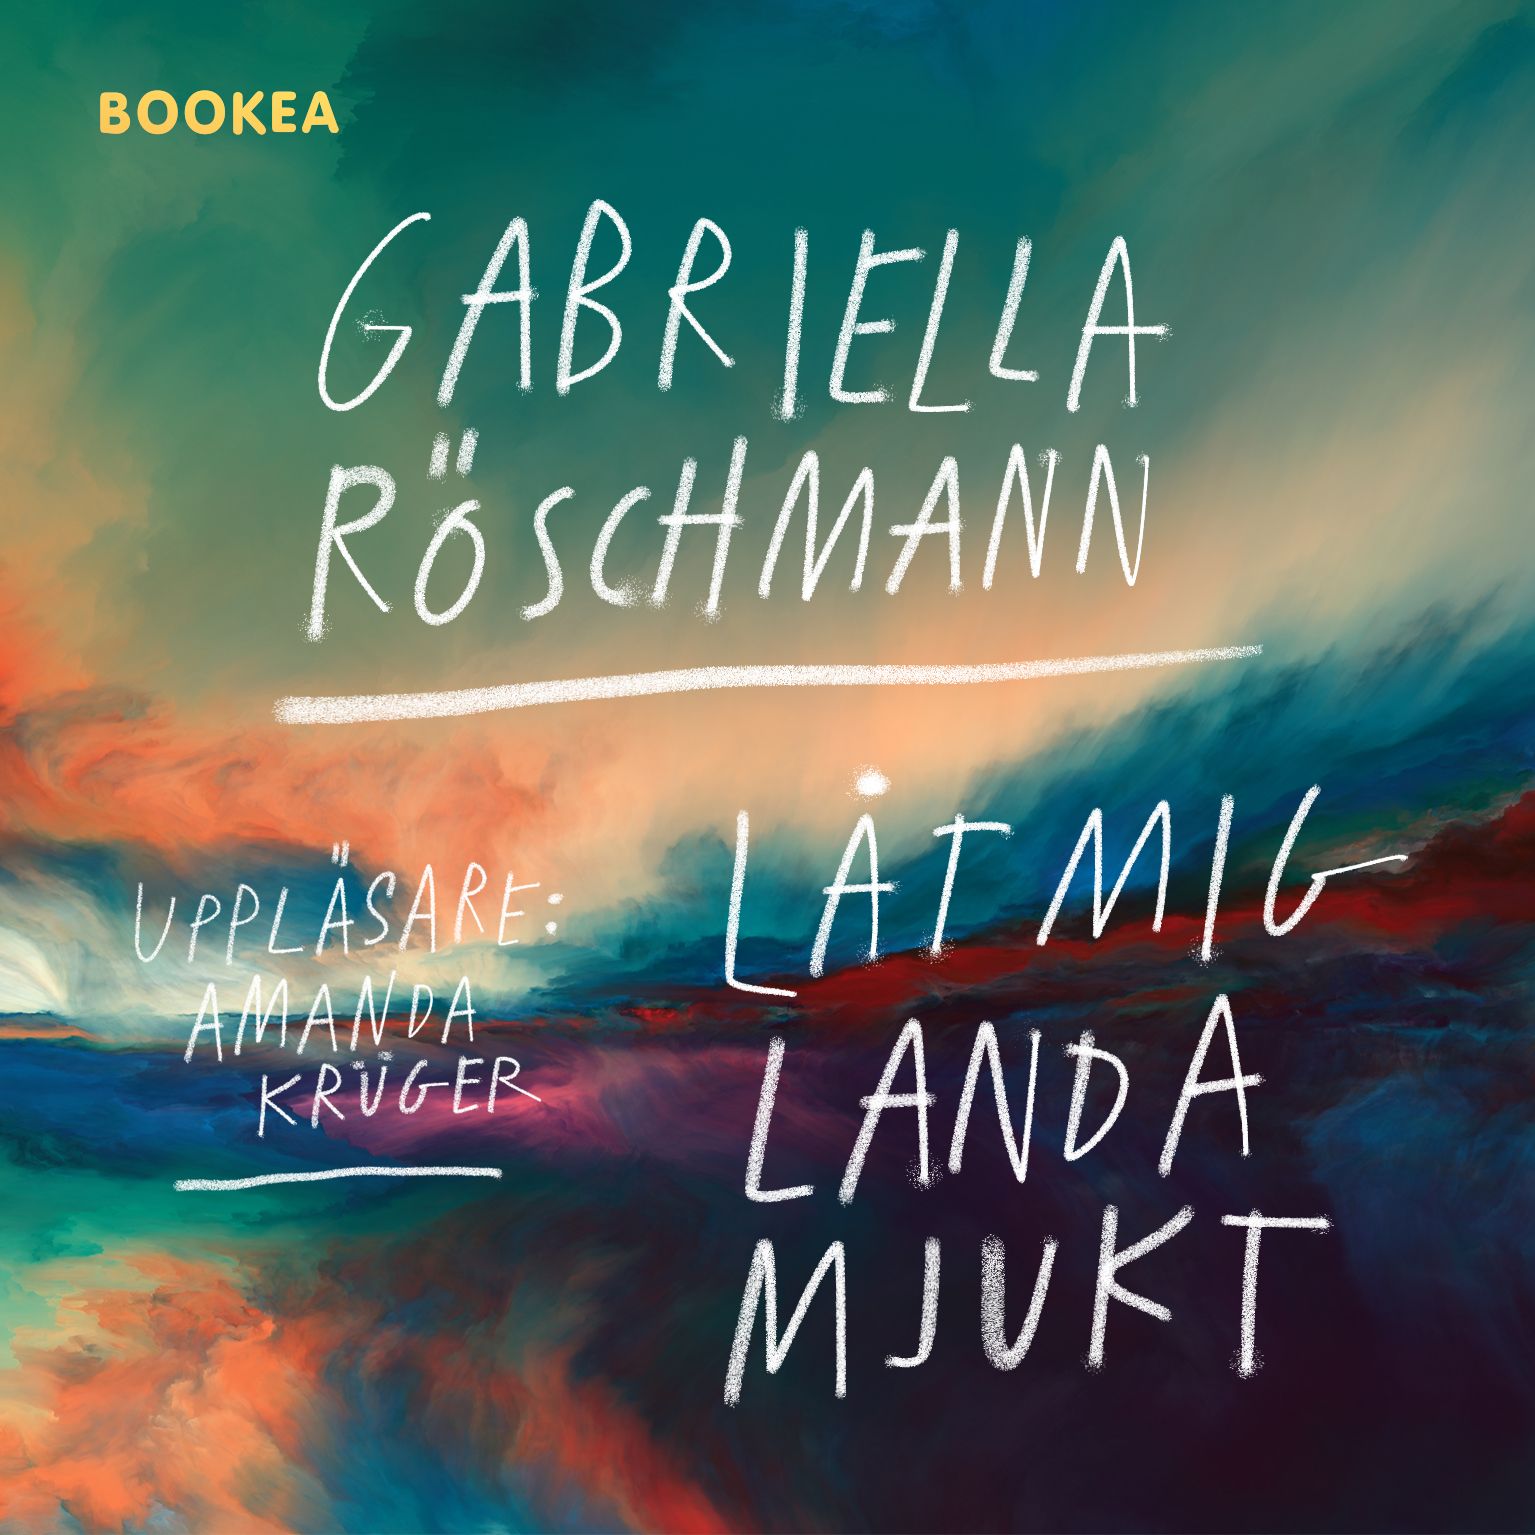 Låt mig landa mjukt, ljudbok av Gabriella Röschmann